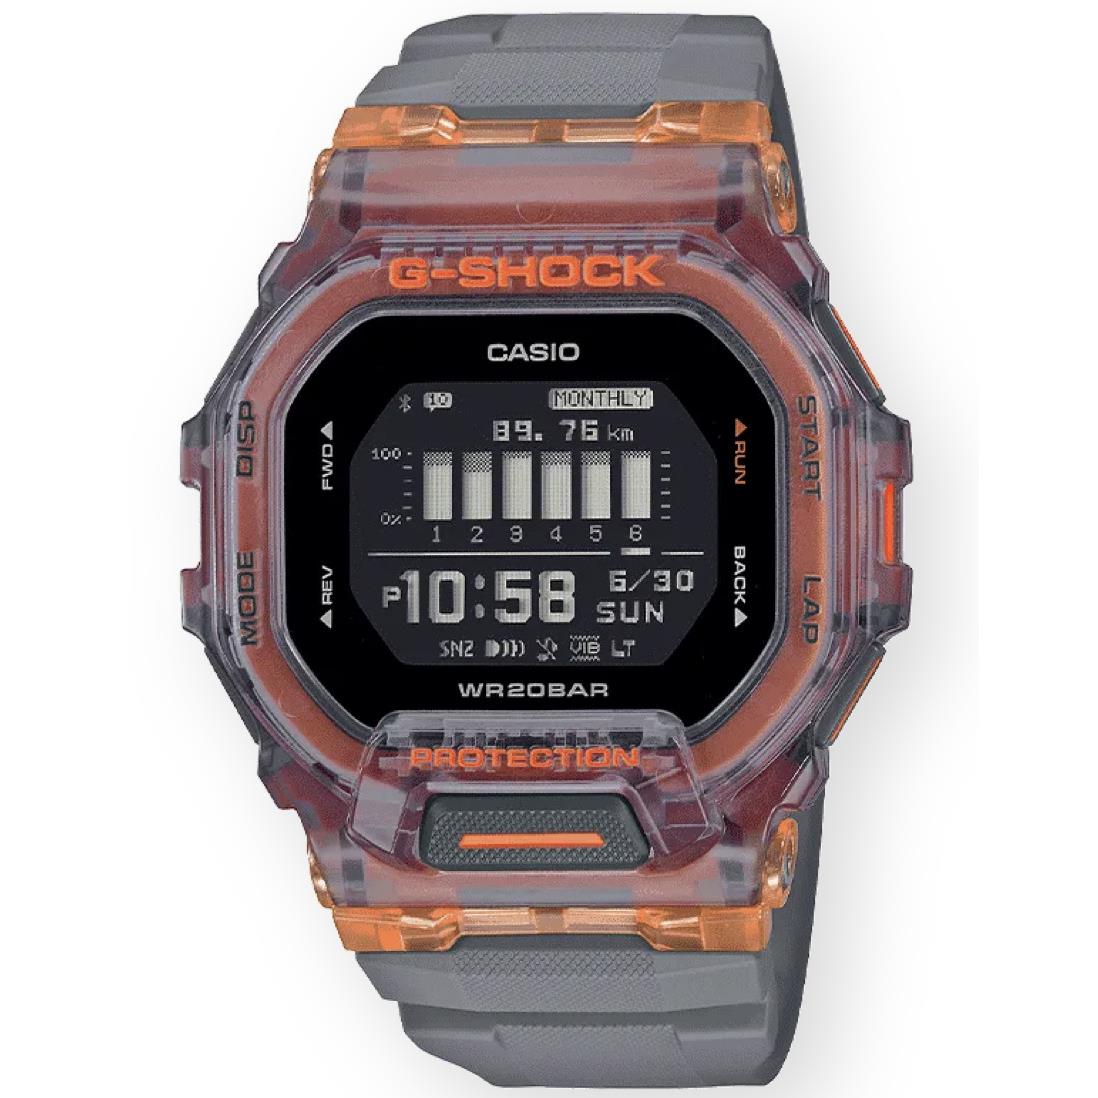 Casio G-shock Digital G-squad Vibrant Orange Resin Watch- GBD200SM-1A5